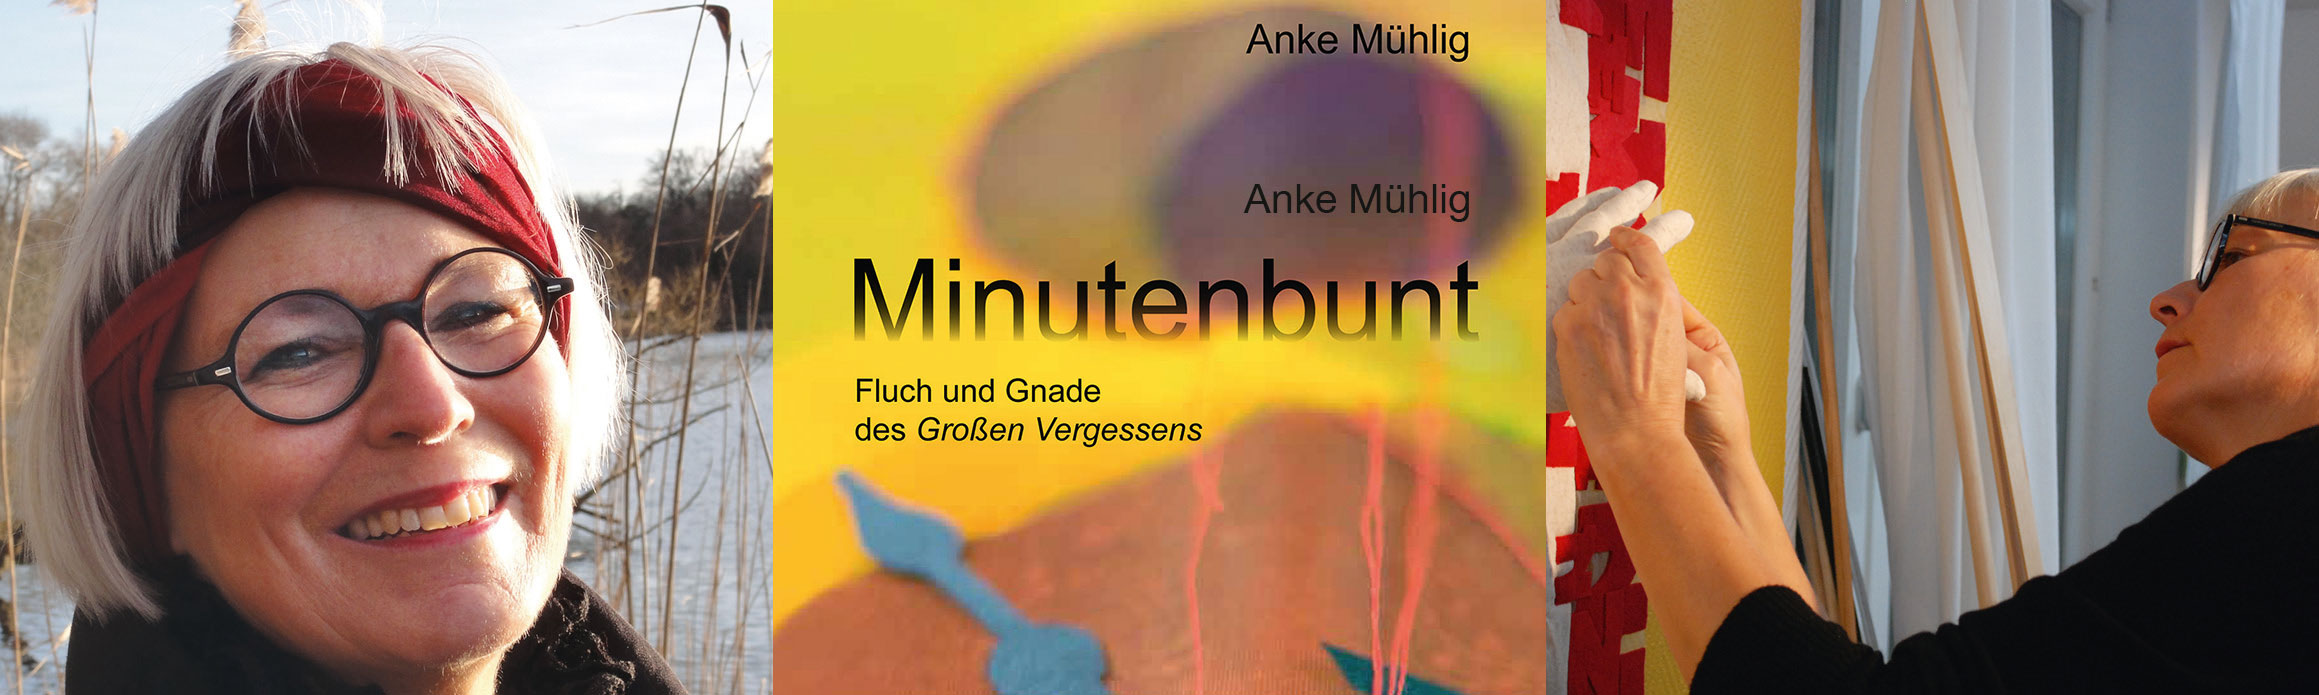 Minutenbunt Lesung mit Anke Mühlig